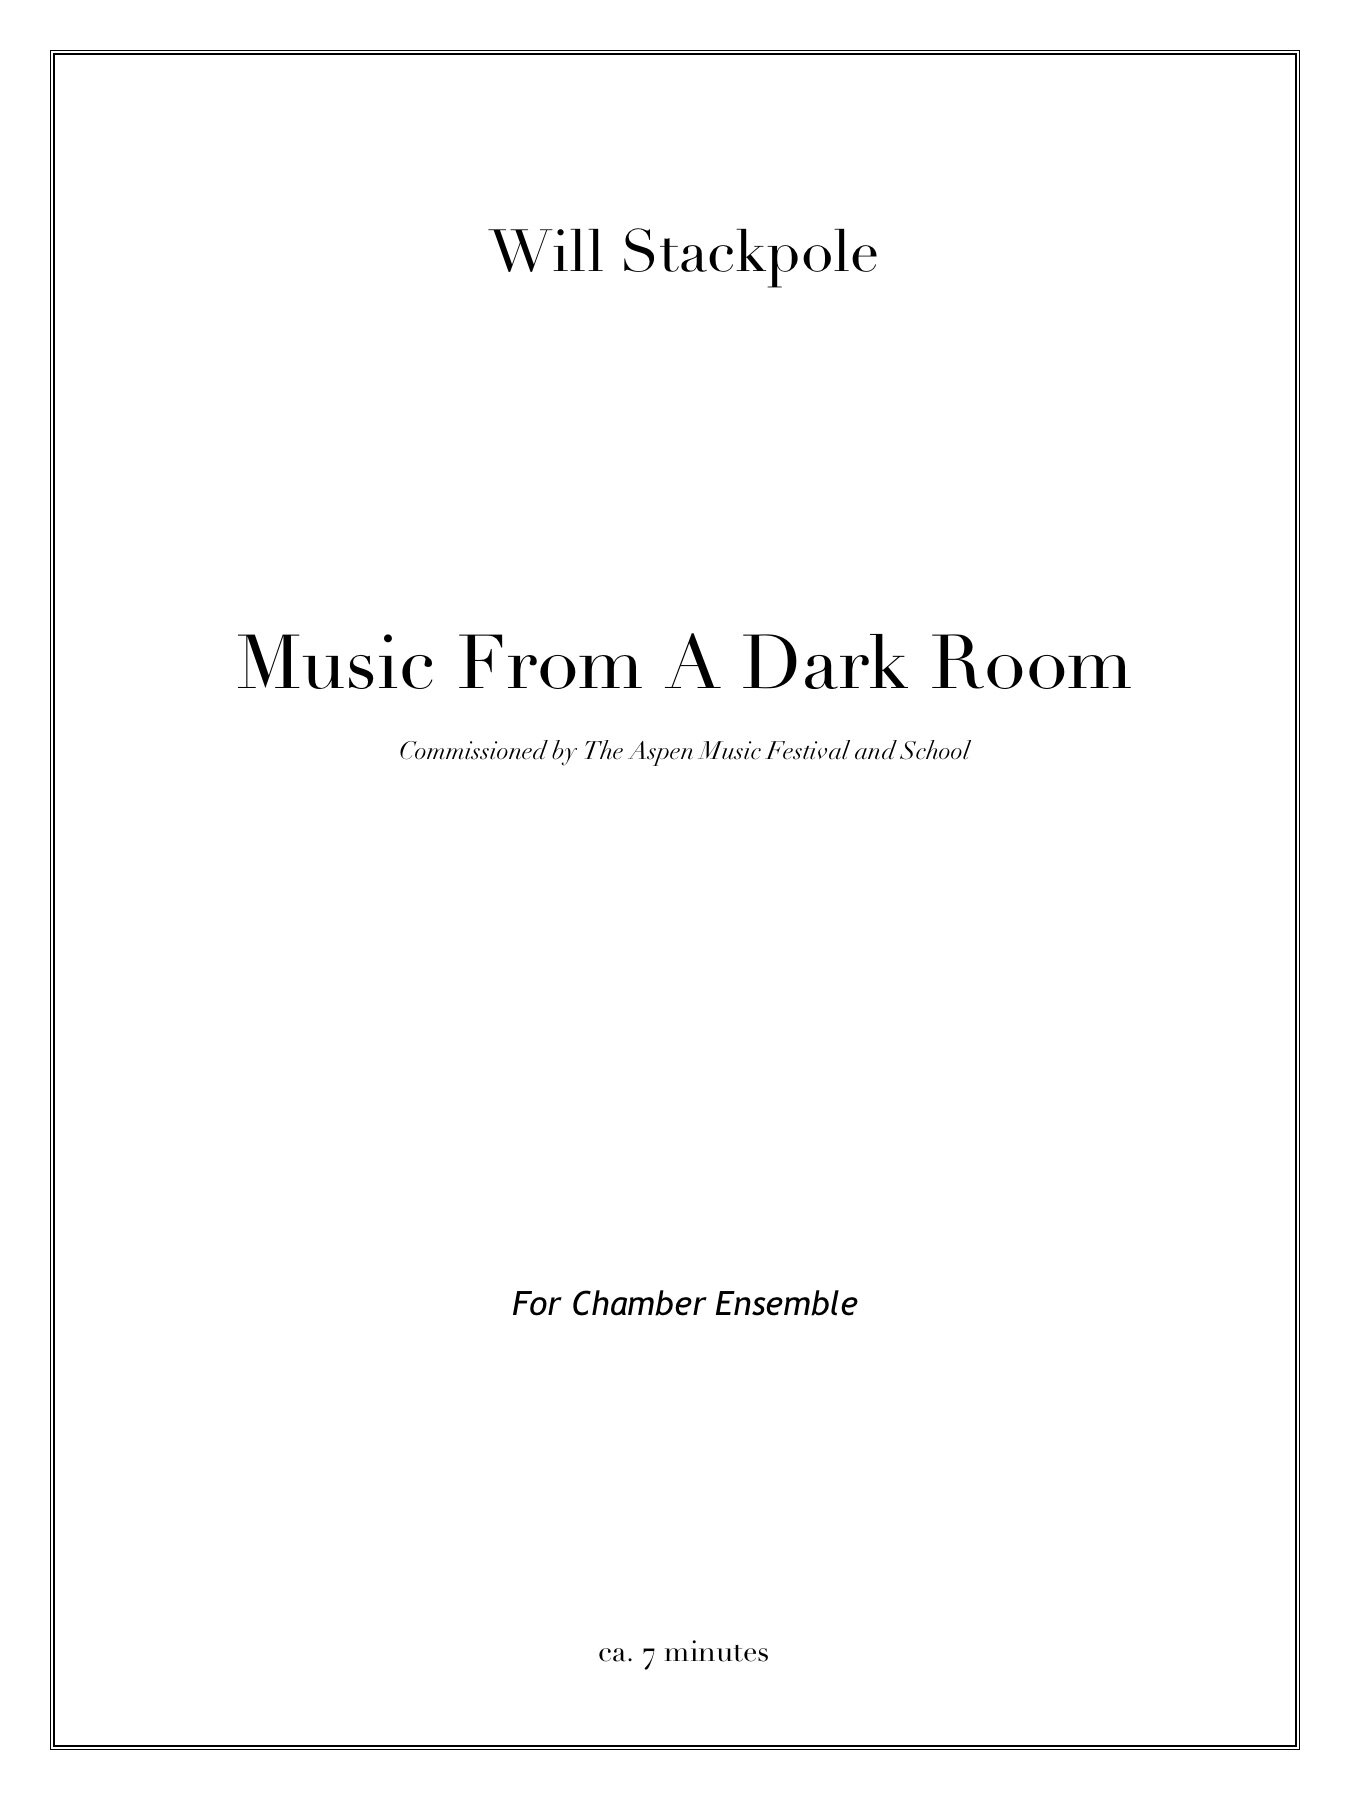 Music from a Dark Room1.jpg